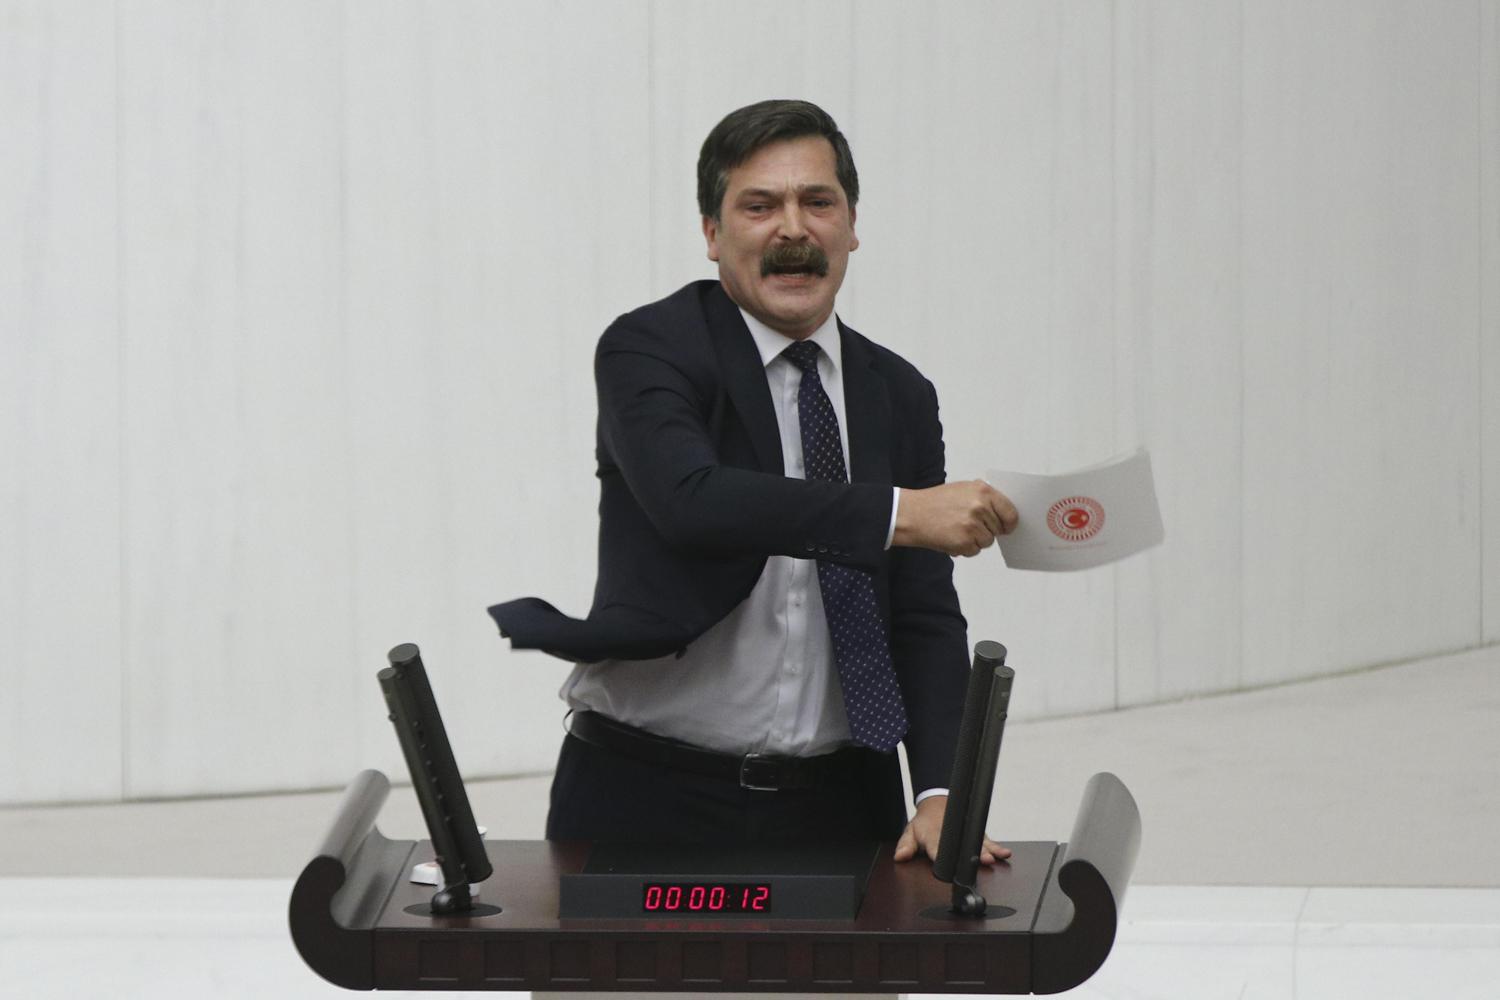 Erkan Baş'tan Mecliste Flaş Çıkış: "Yargılanacaksınız!"